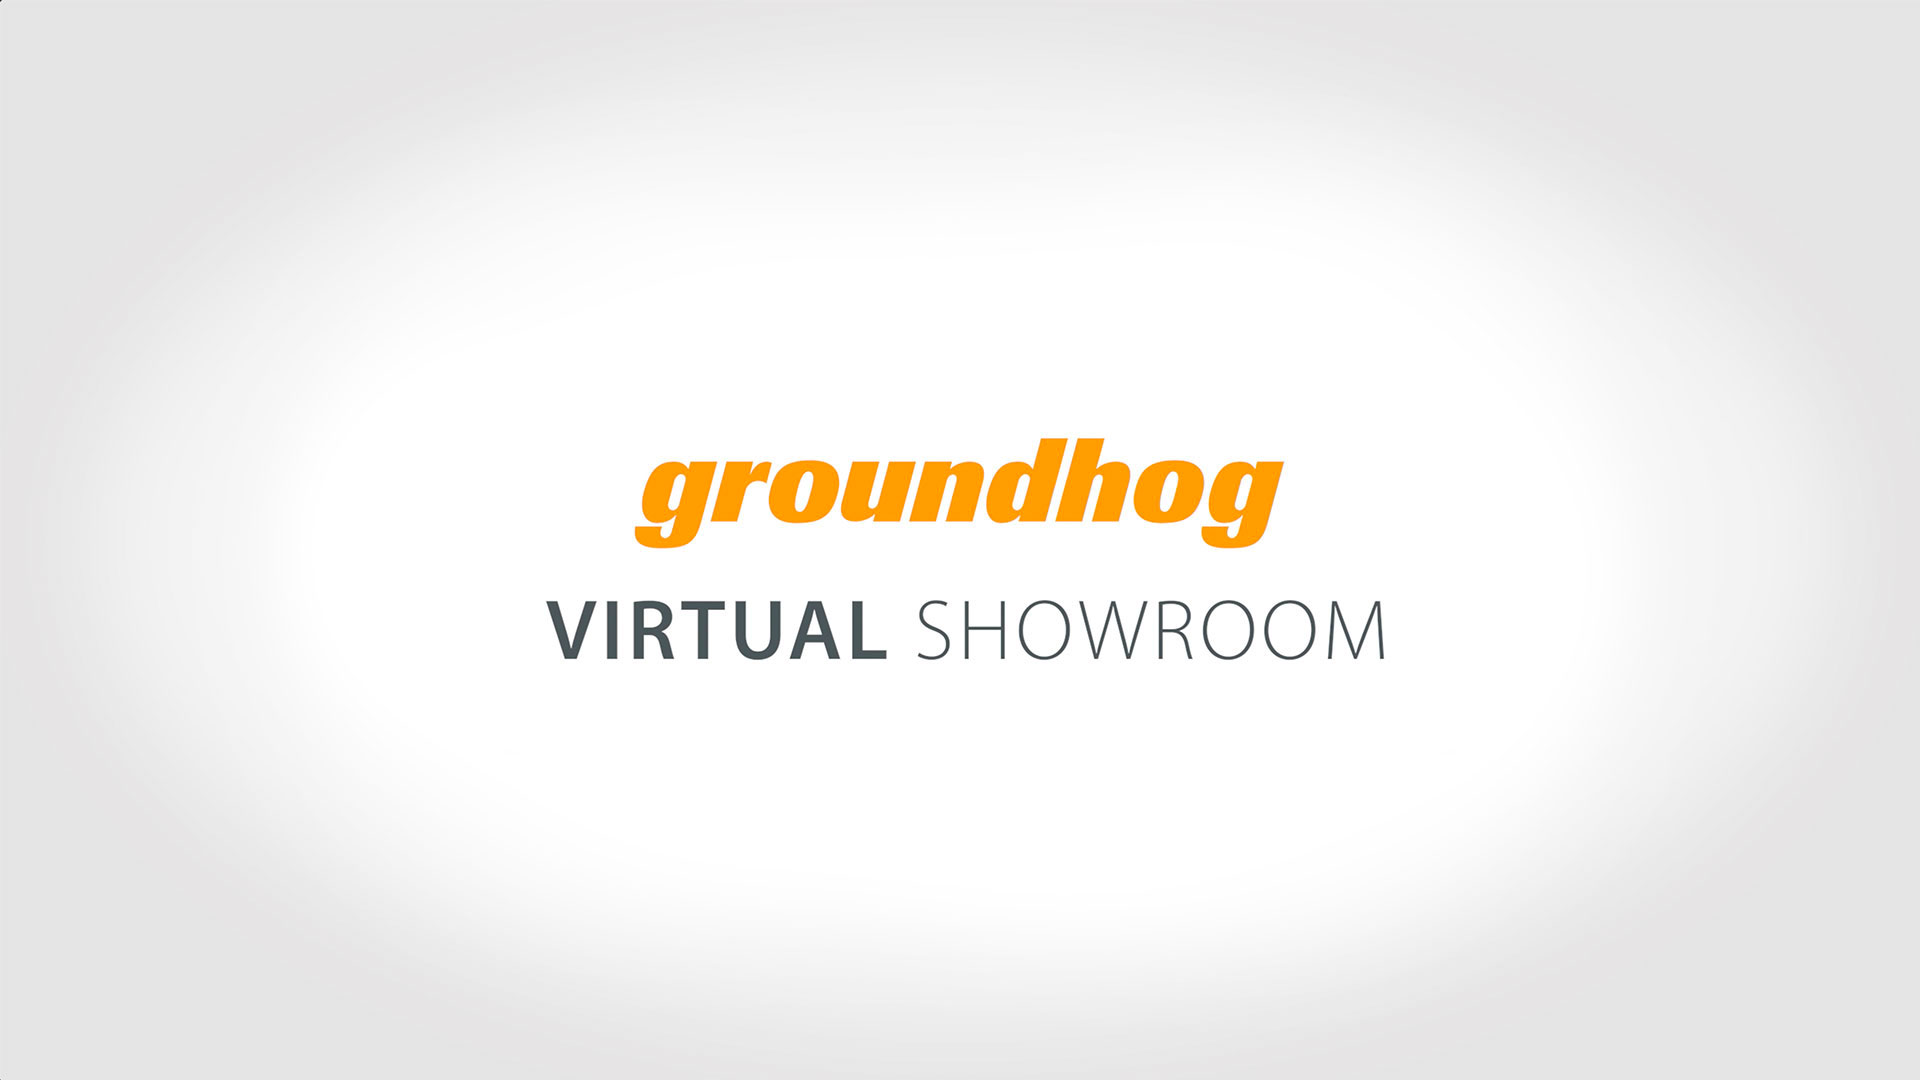 Virtual Showroom Tour